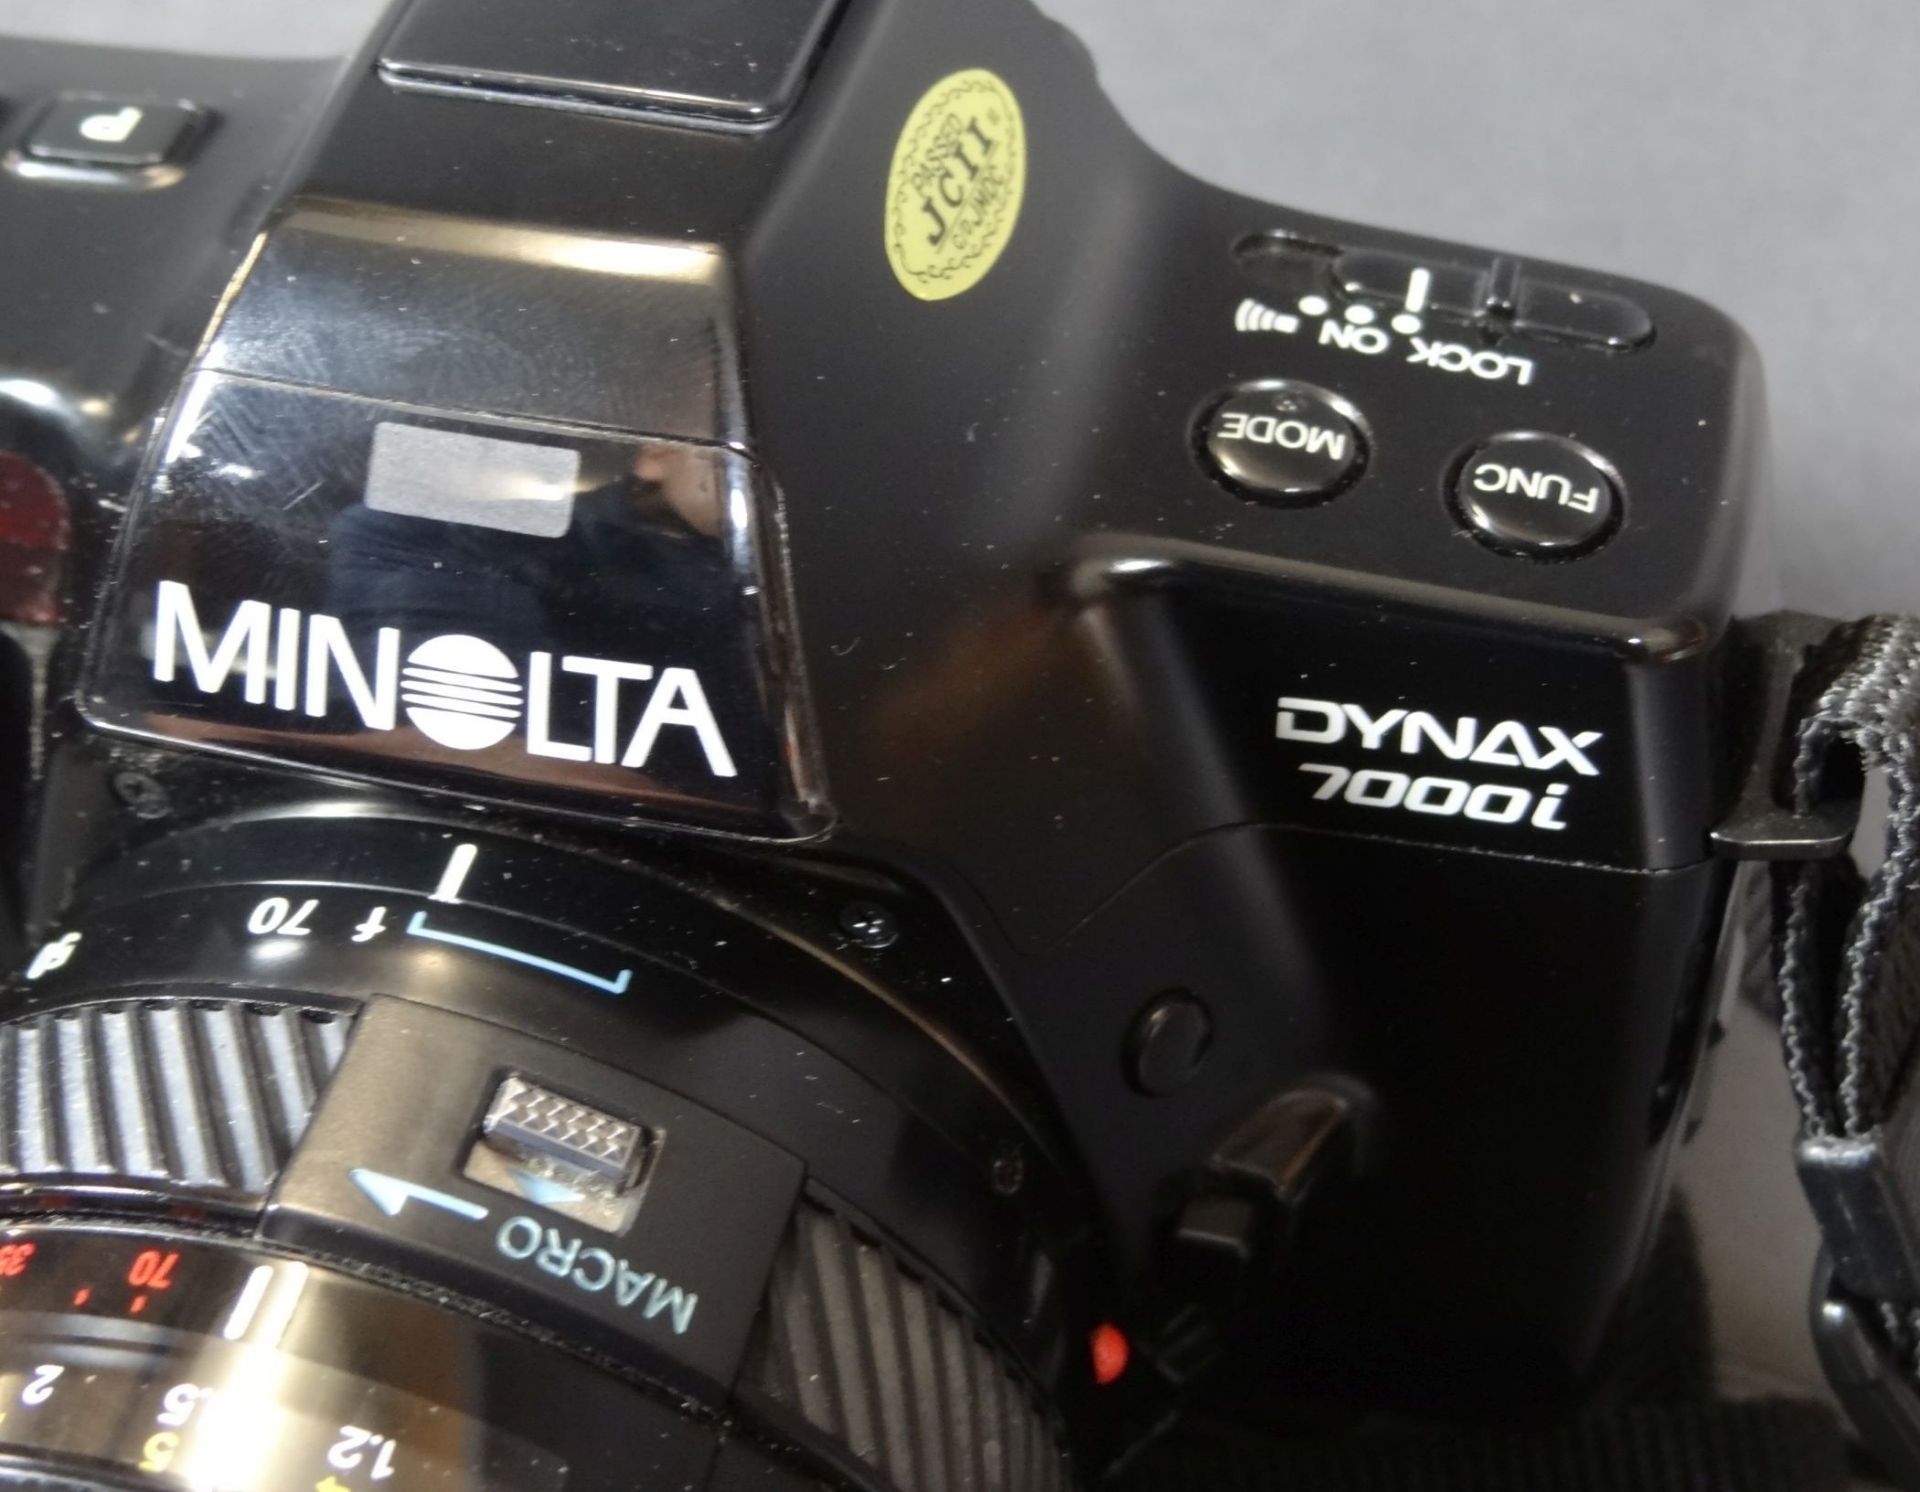 Spiegelreflex-Kamera "Minolta Dynax 7000" in Tasche mit Zubehö- - -22.61 % buyer's premium on the - Bild 3 aus 7